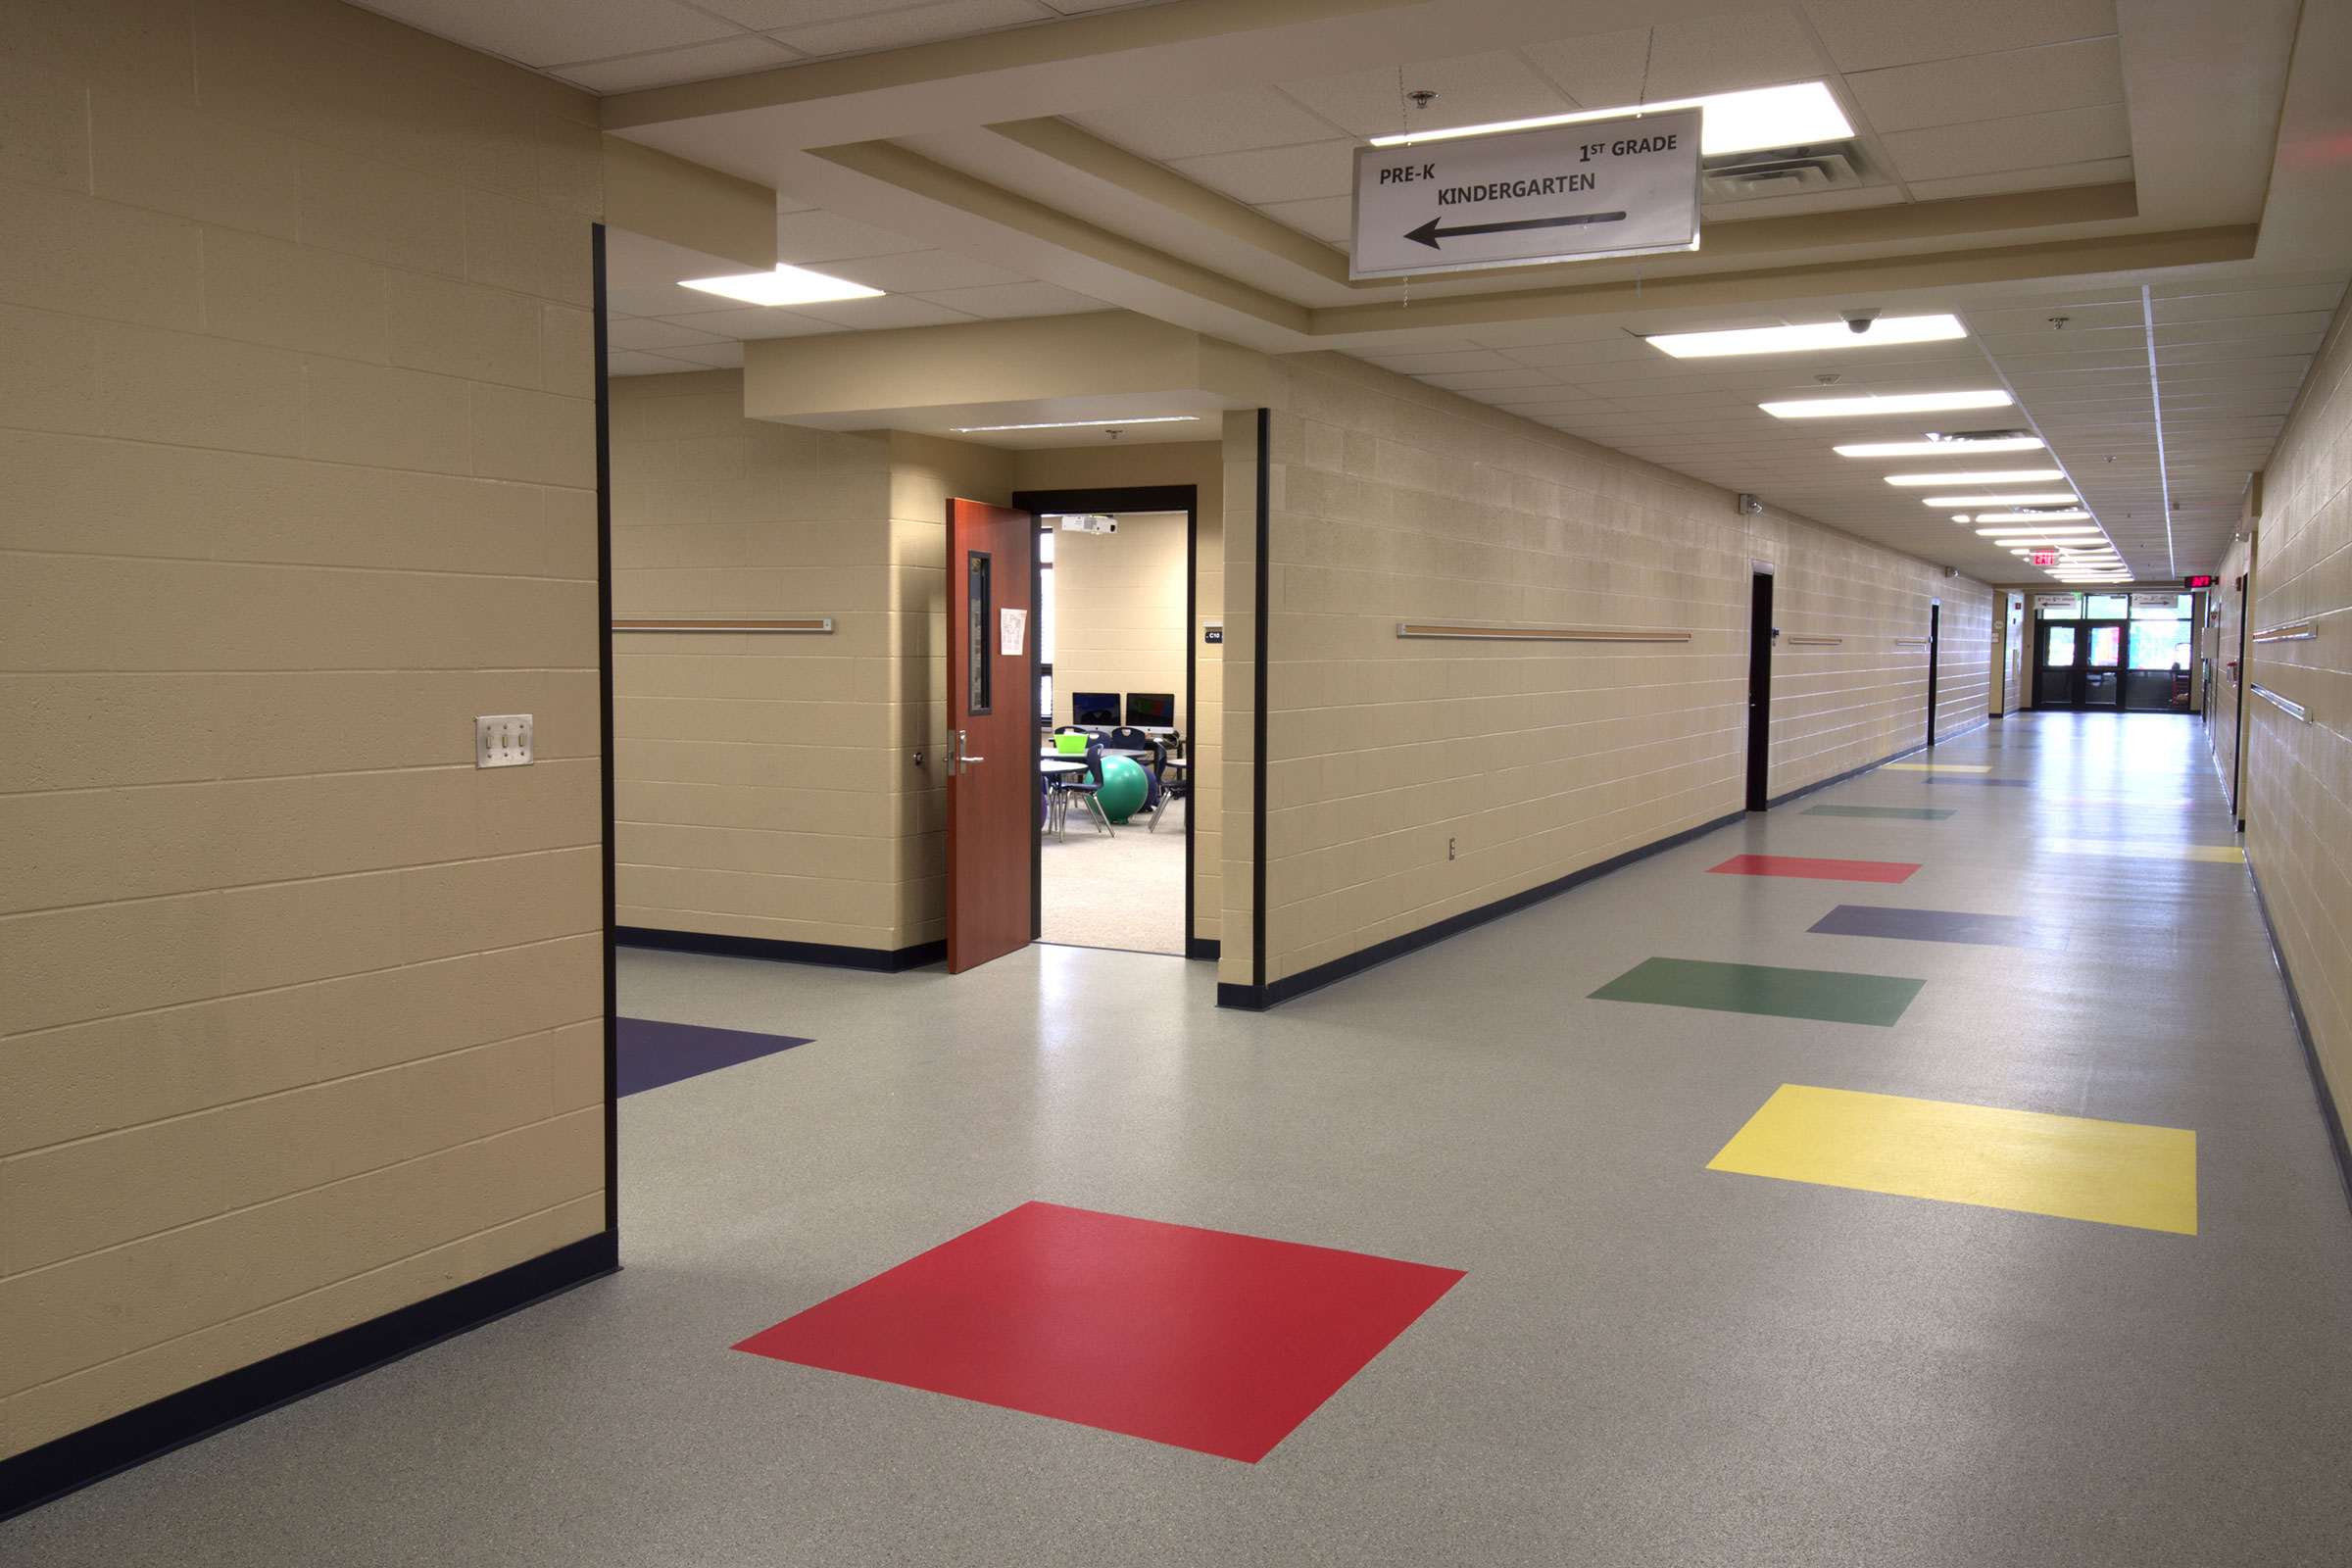 The Benefits of Rubber Flooring in Schools